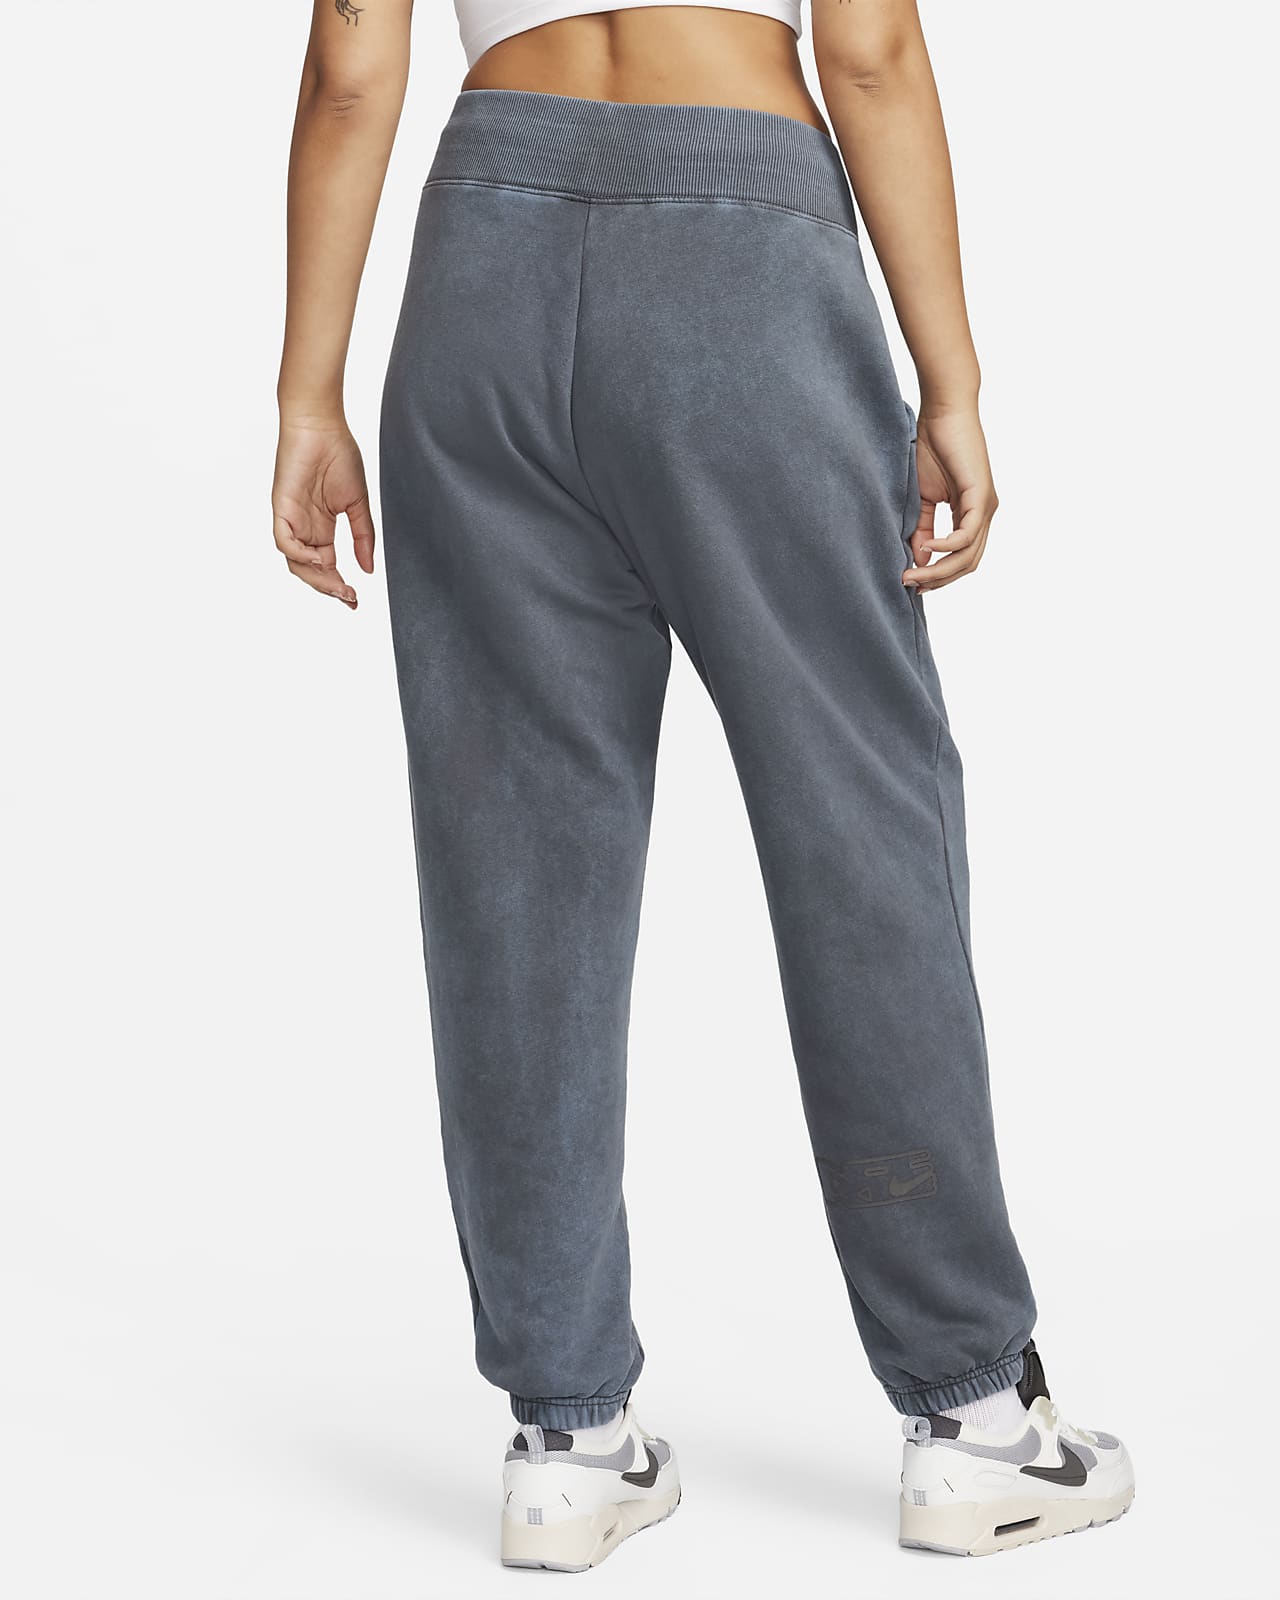 Nike Sportswear Phoenix Fleece Women's High-Waisted Pants